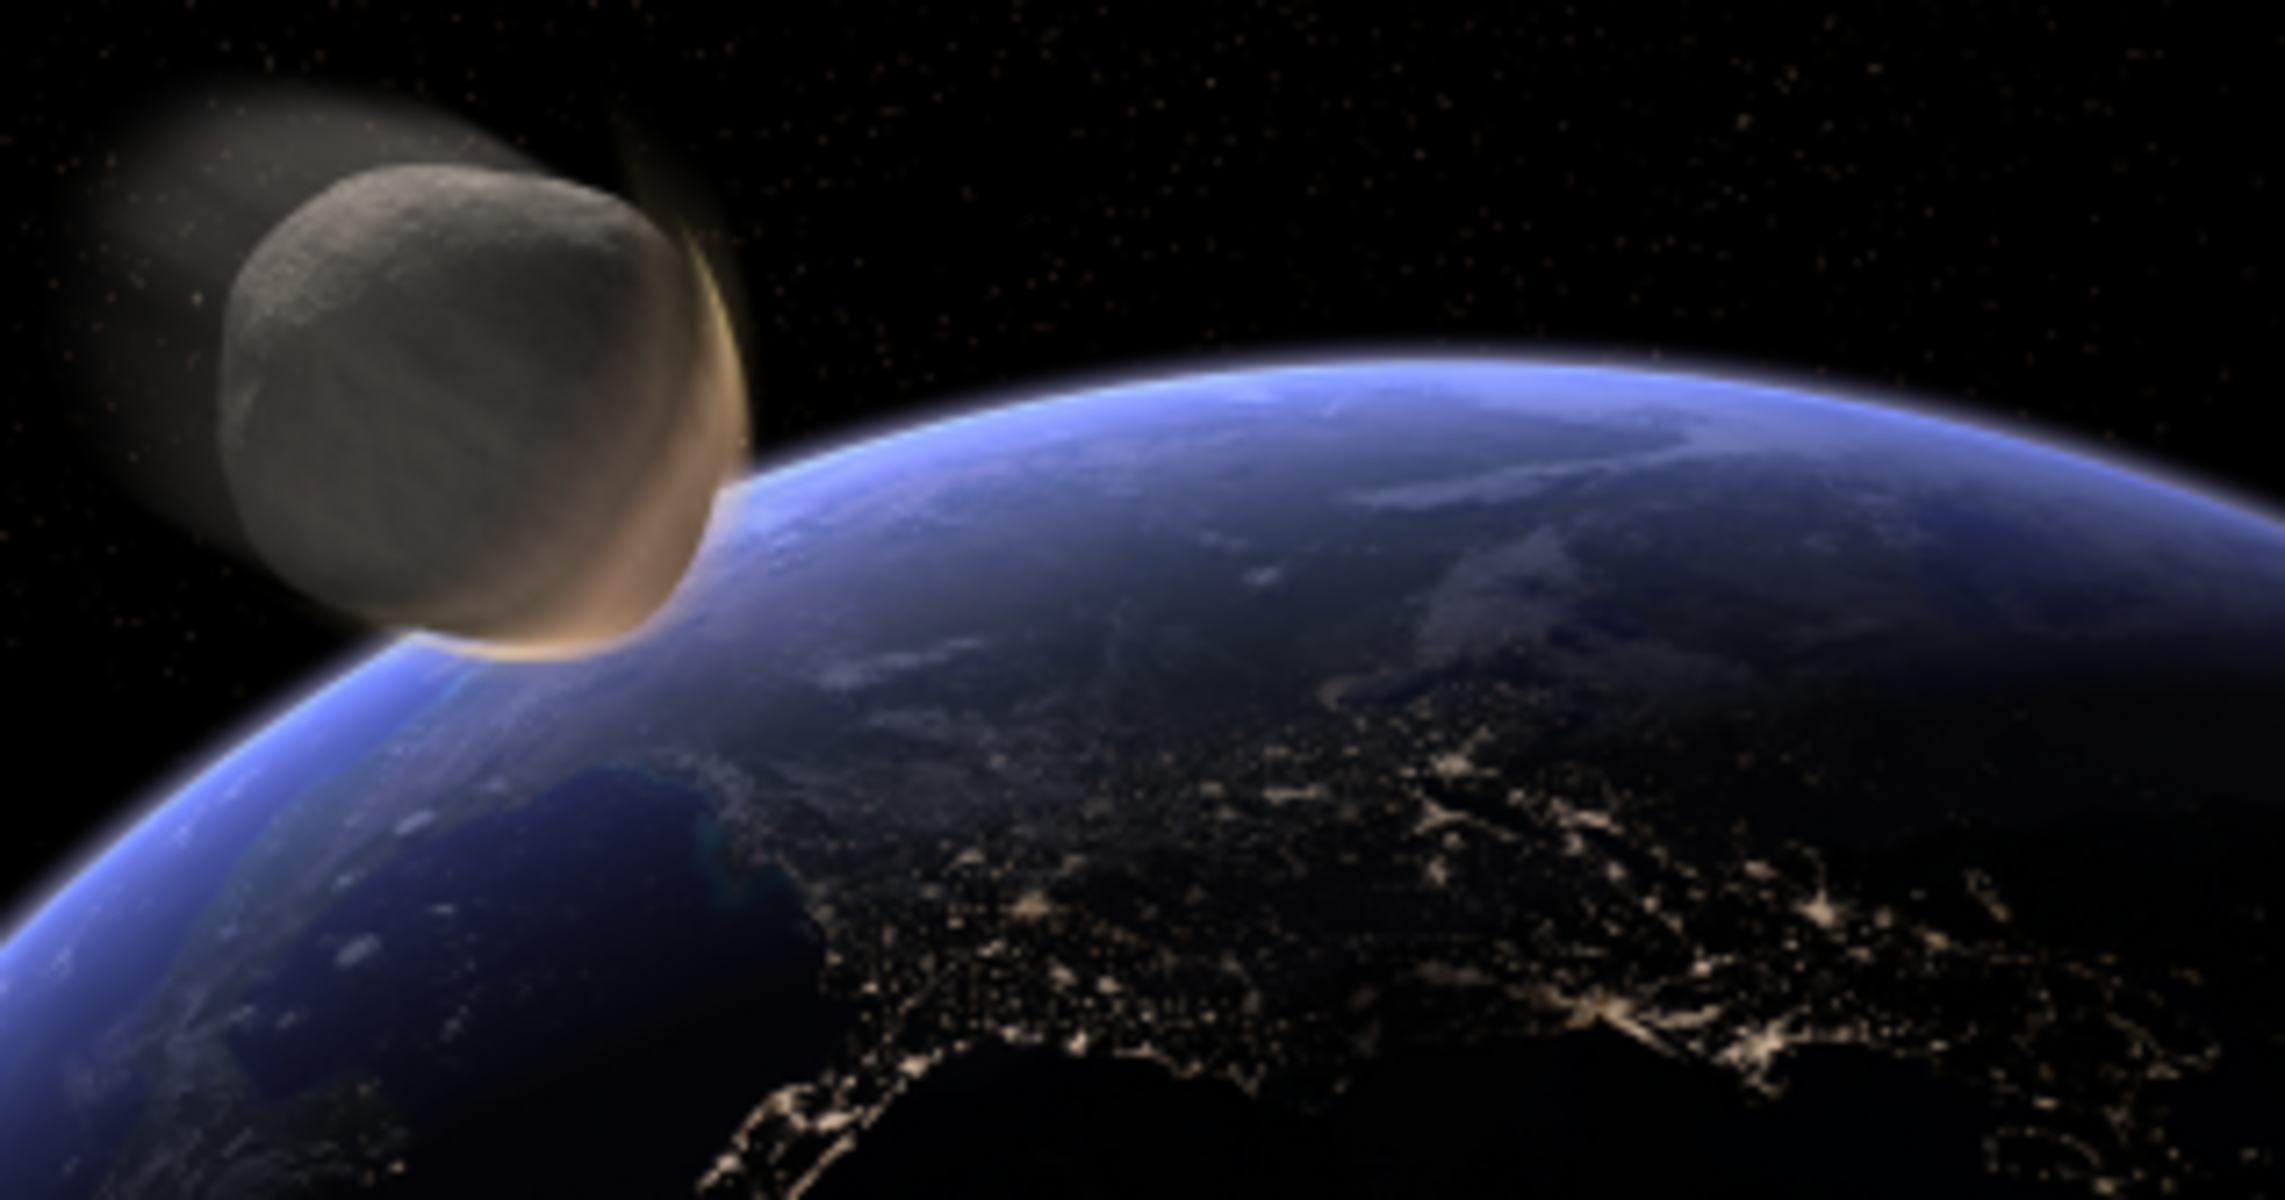 De plus en plus d'astéroïdes frappent la Terre